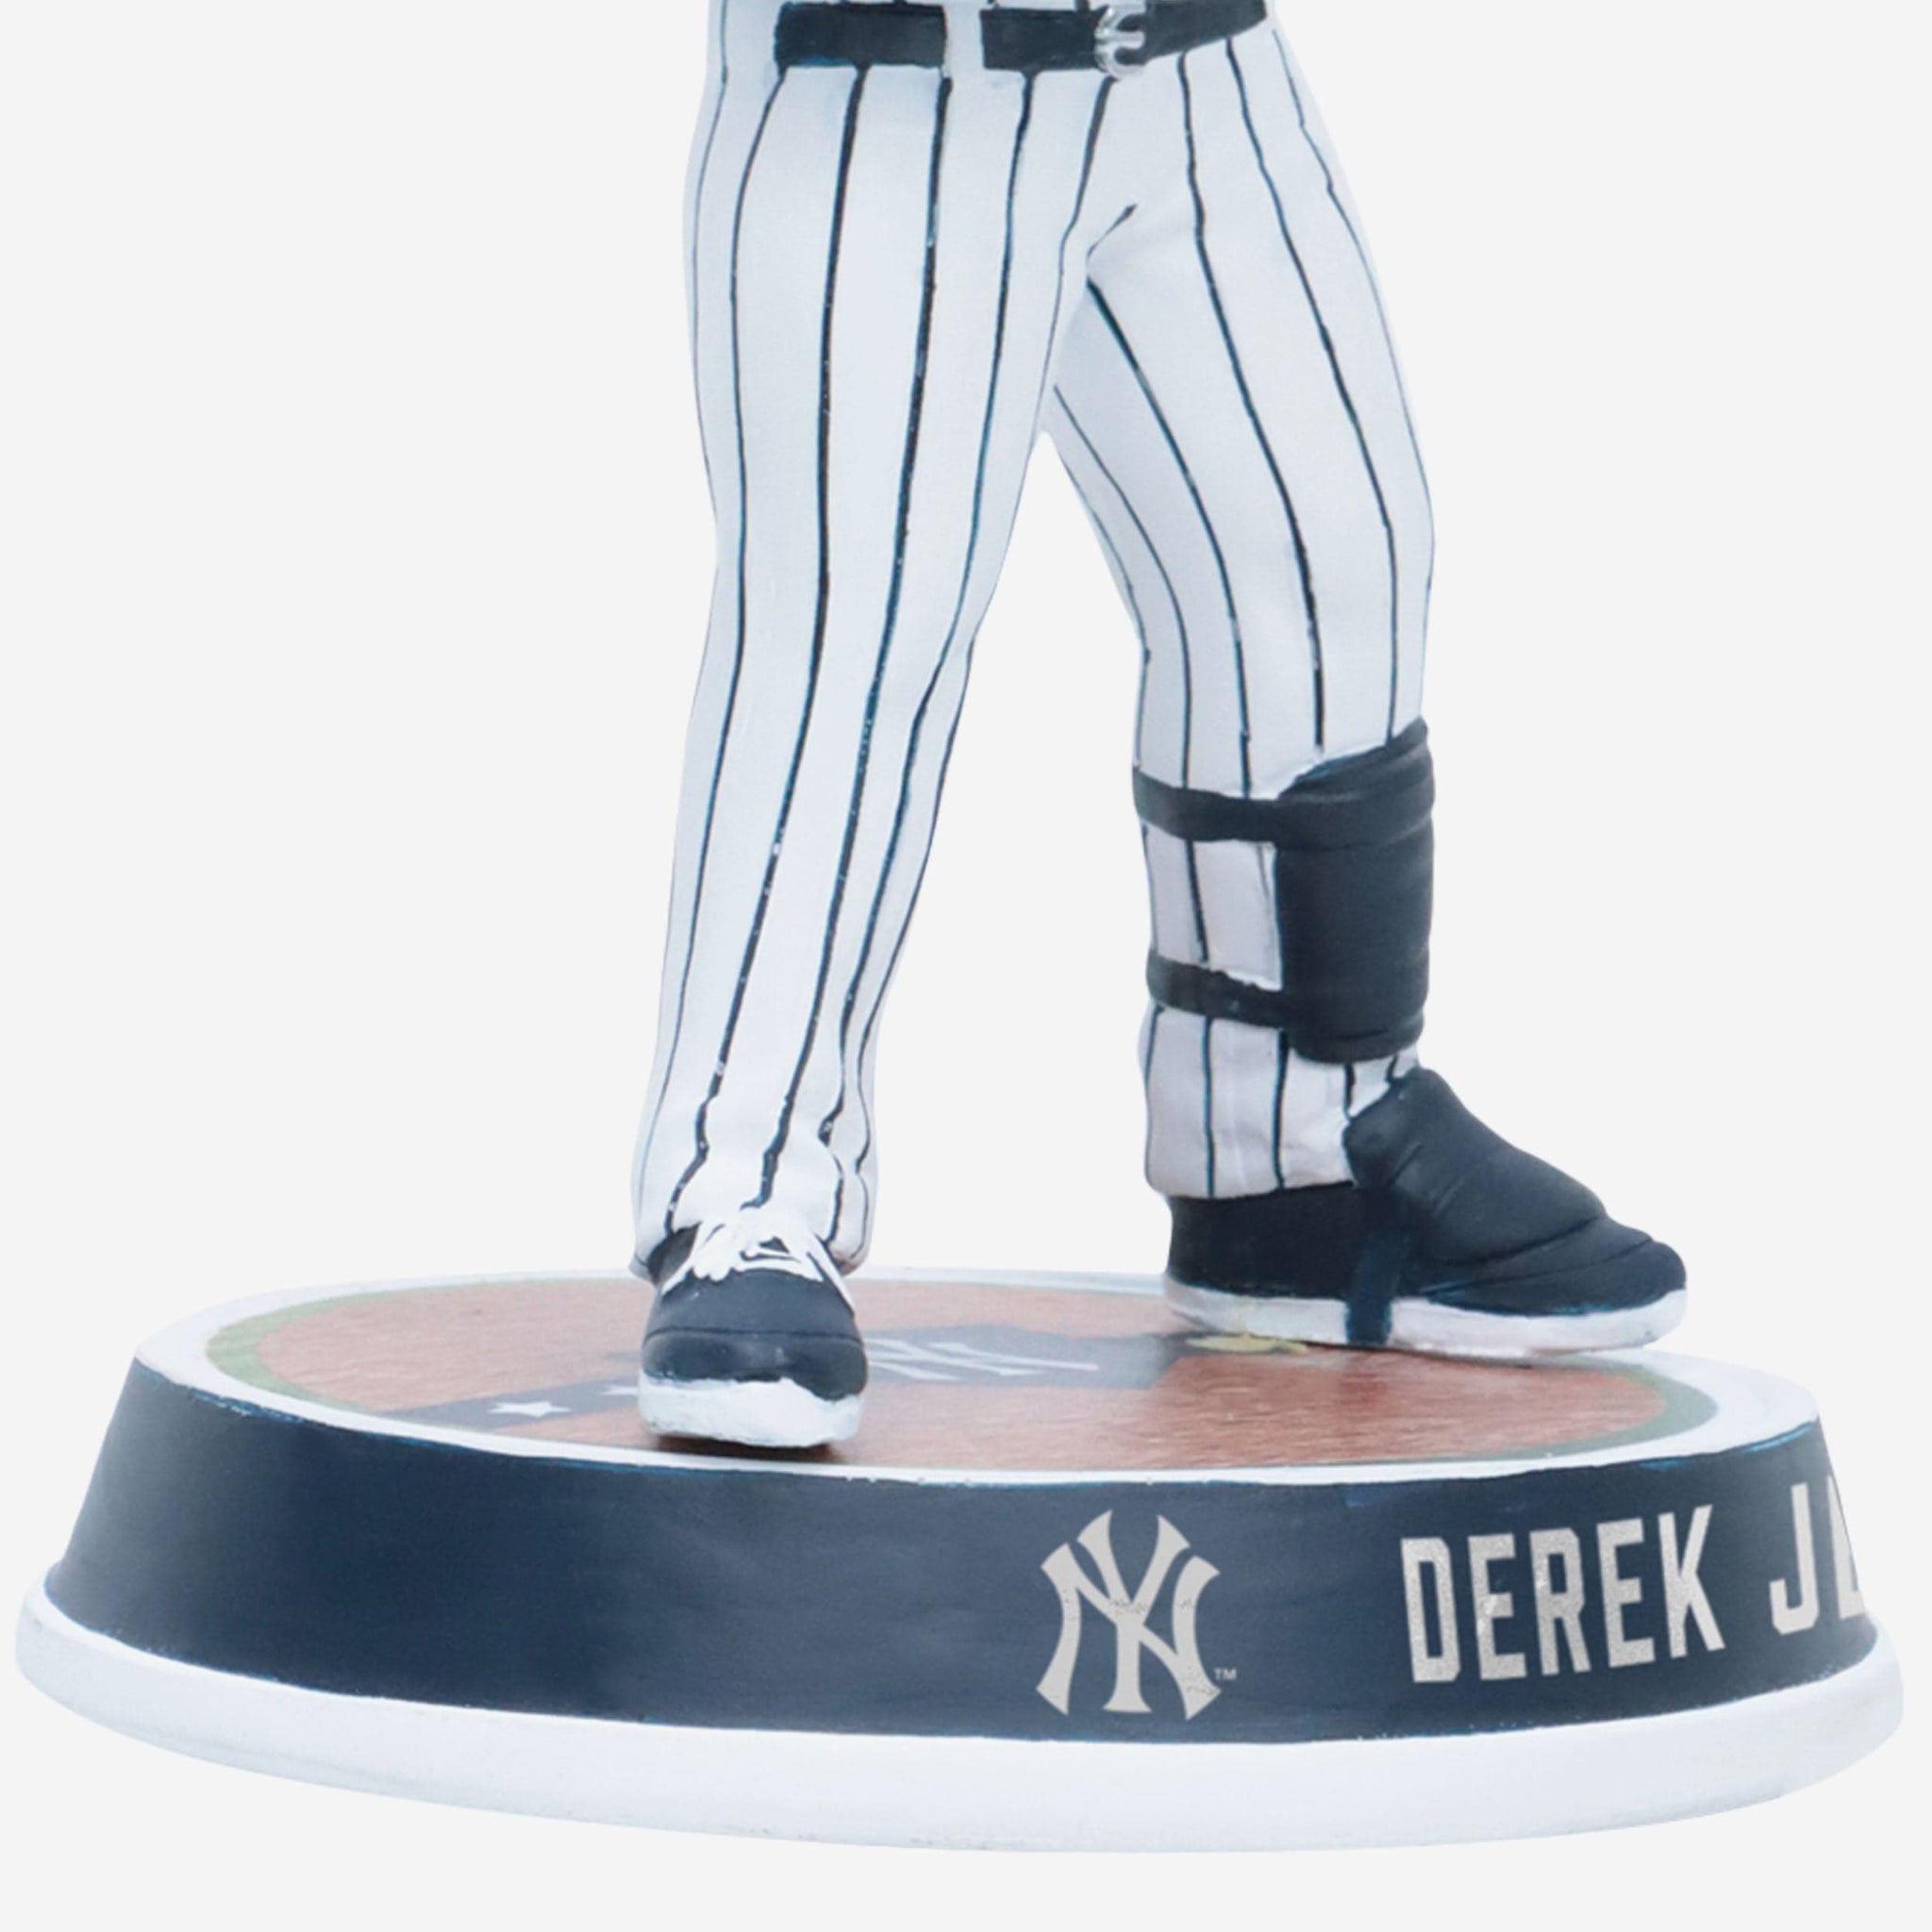 Derek Jeter New York Yankees Bomber Spinning Bobblehead FOCO